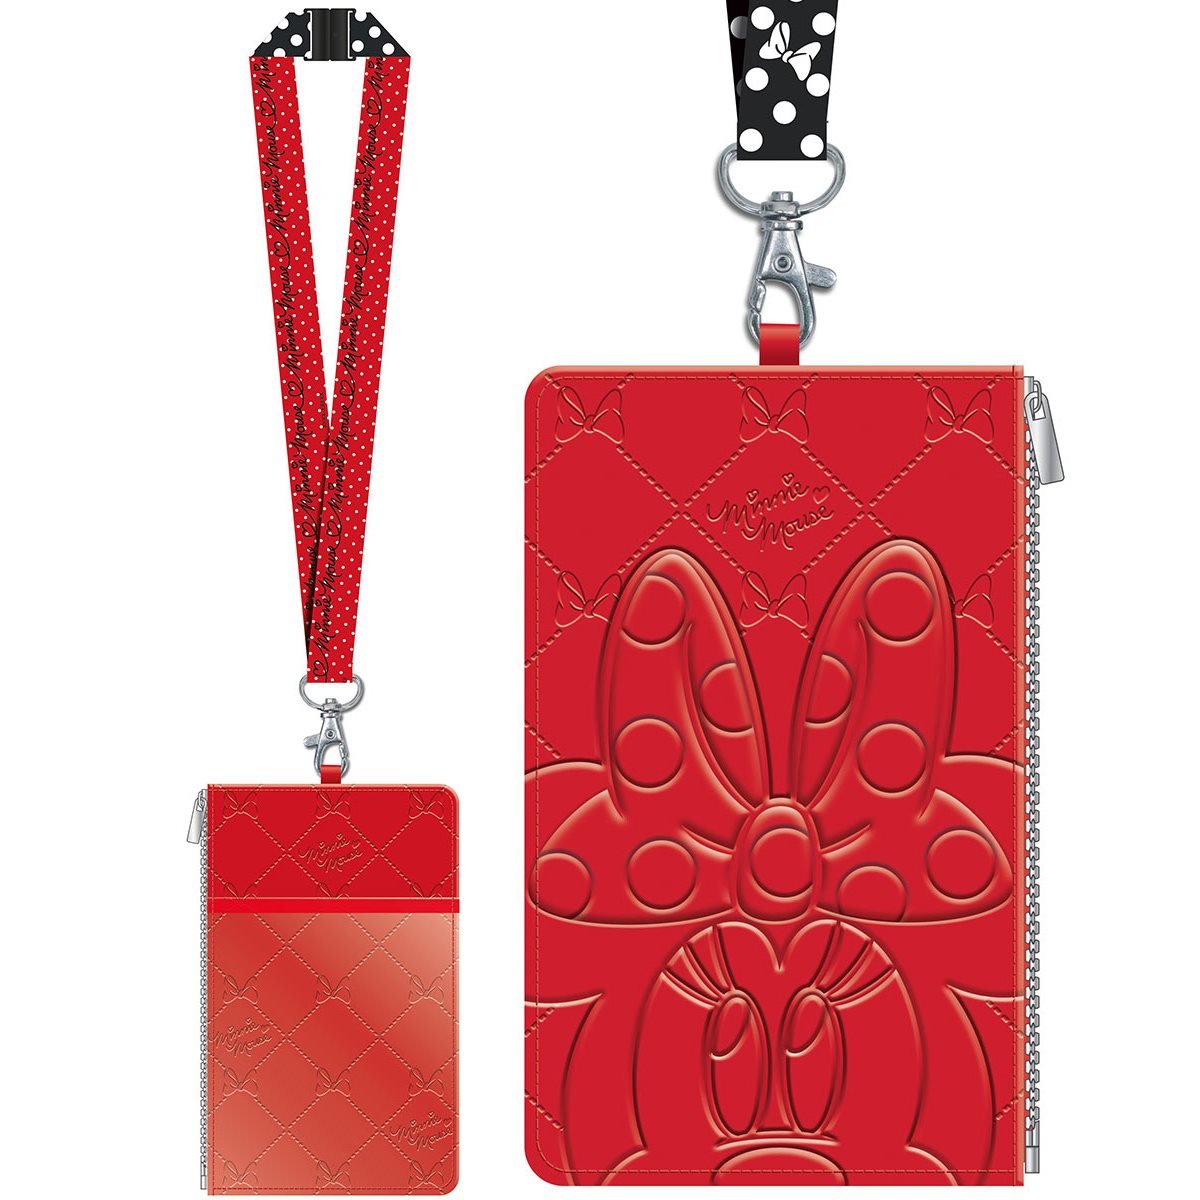 Louis Vuitton Mickey Mouse Plush Toy Ltd Ed  Mickey mouse monogram, Plush  toy, Mickey mouse